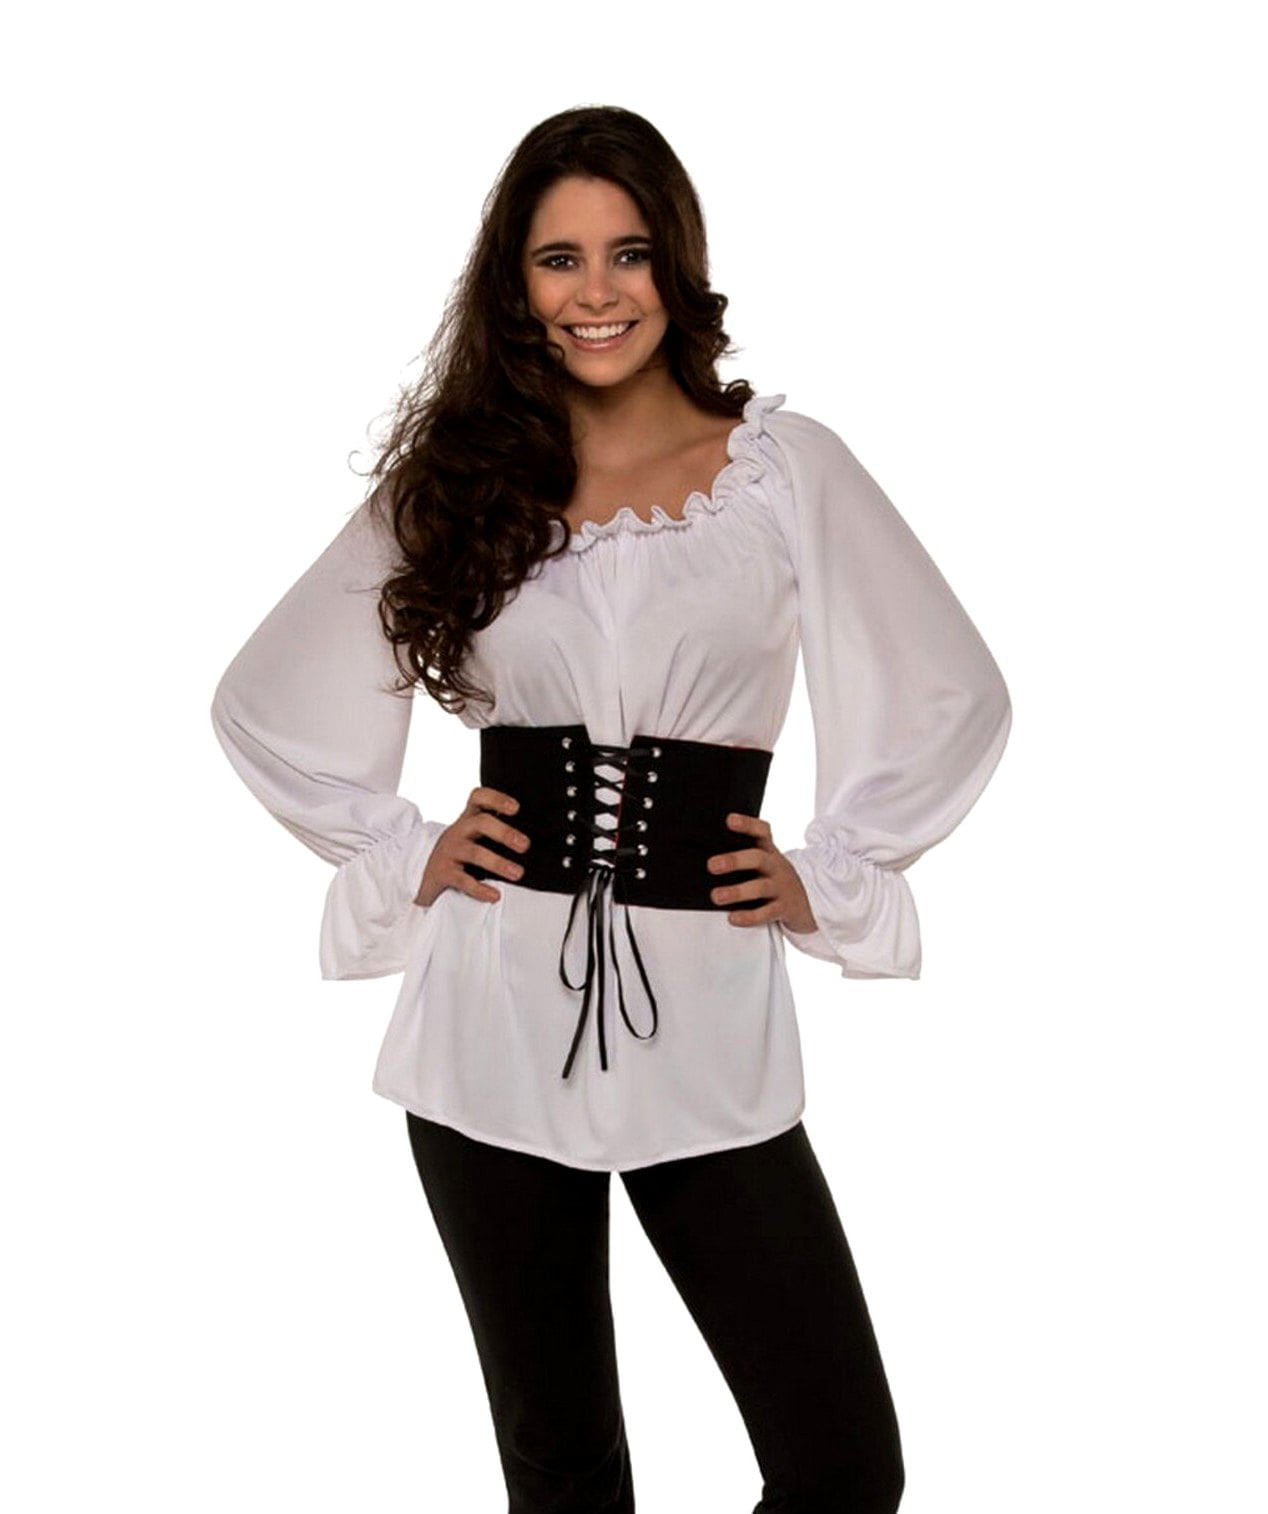 pirate womens shirt